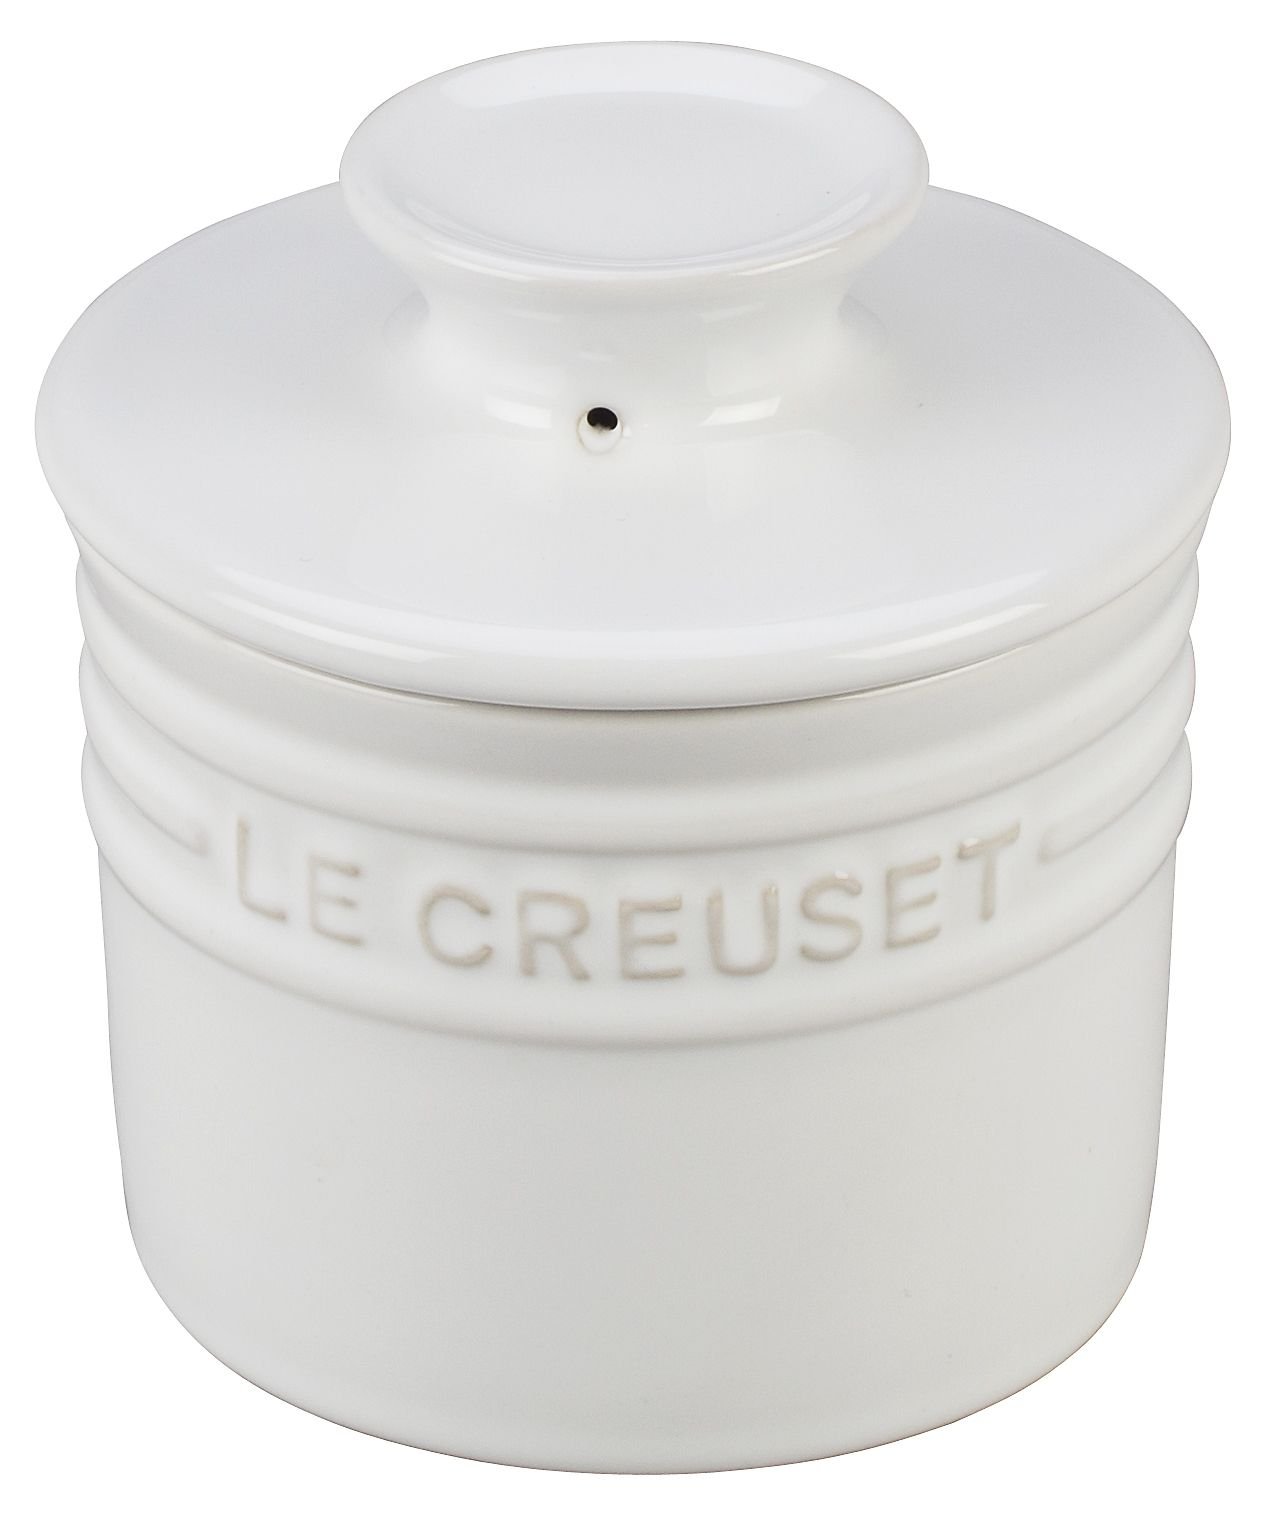 Le Creuset - Utensil Crock - White